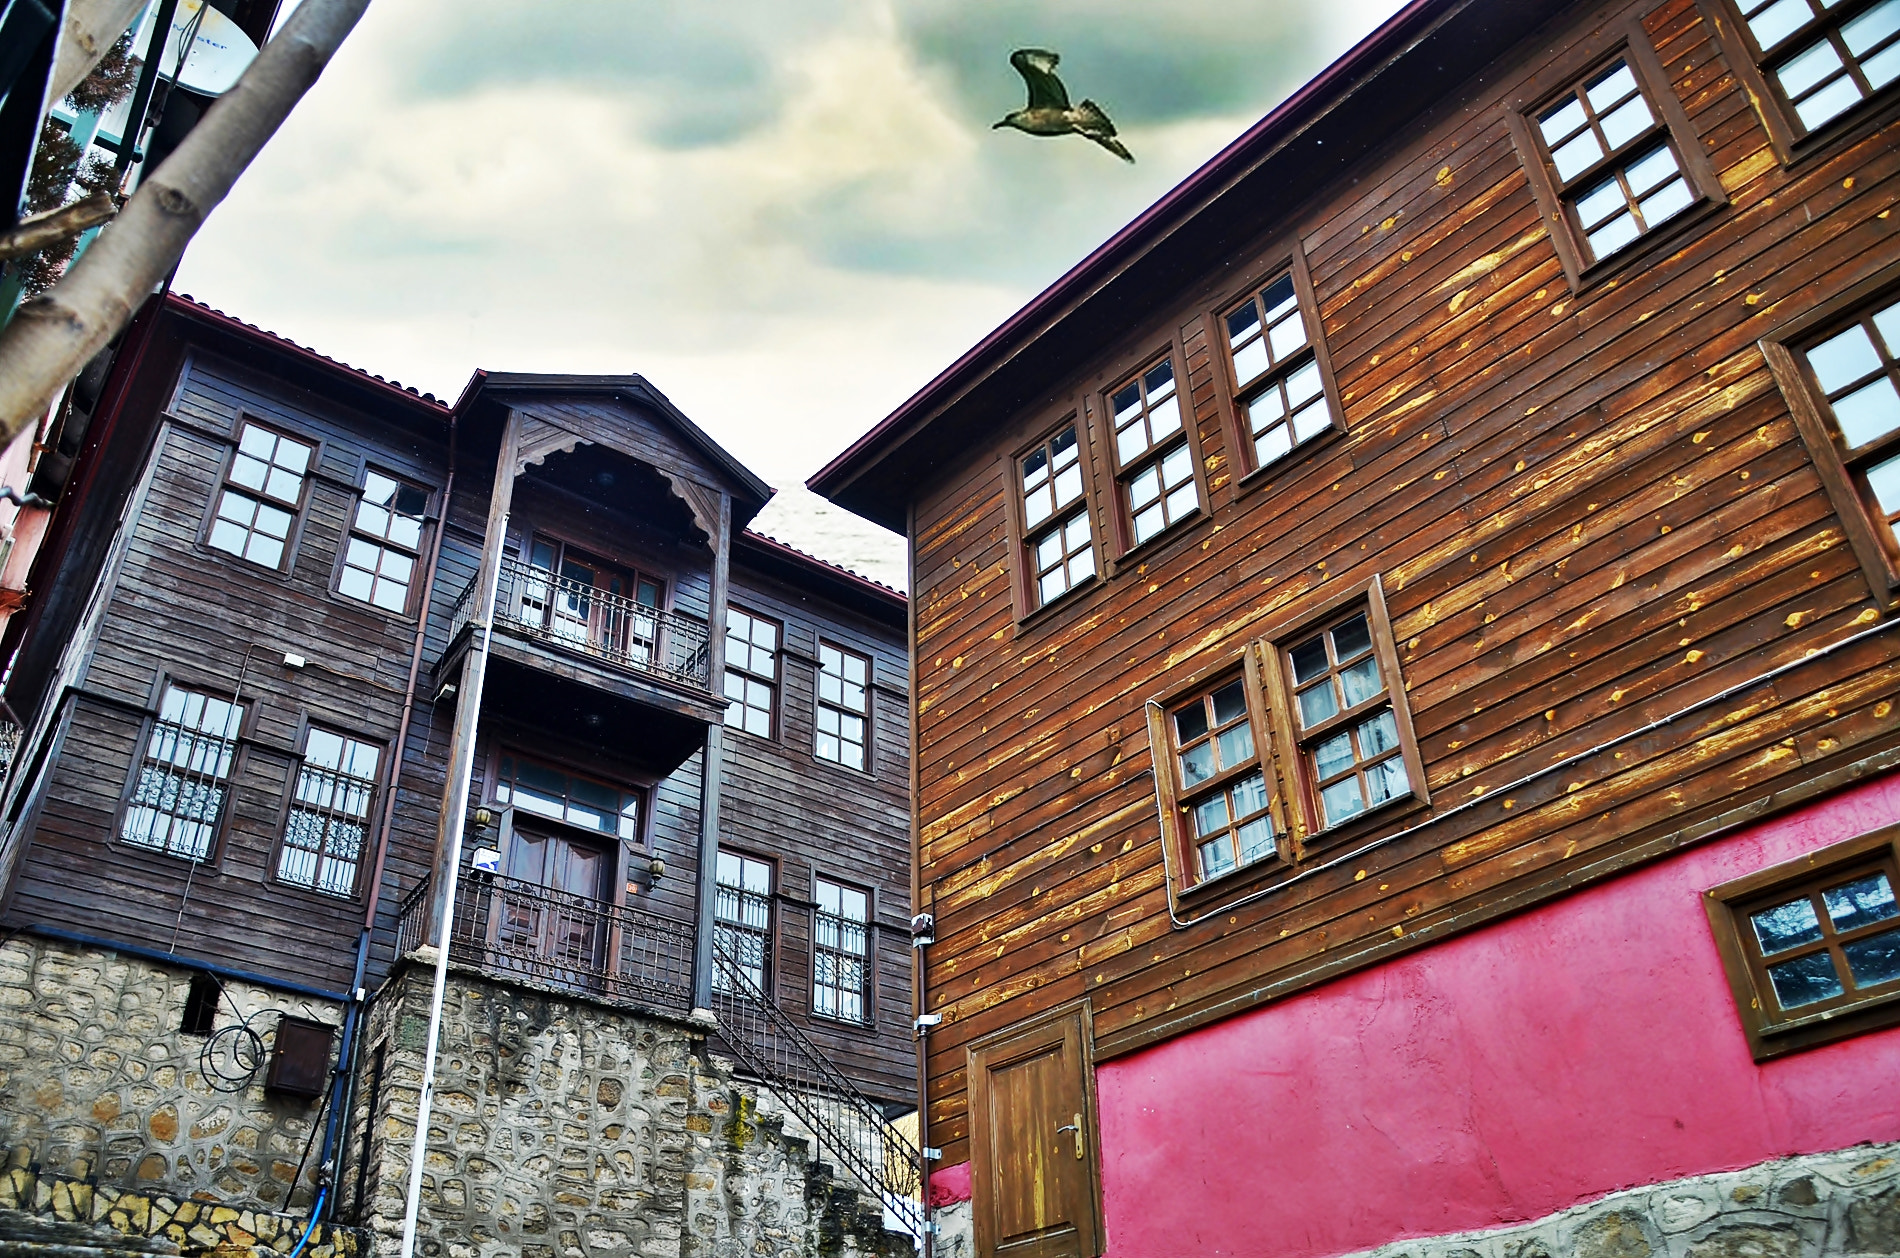 AF Nikkor 70-210mm f/4-5.6D sample photo. Bartınturkey woodenhouse photography